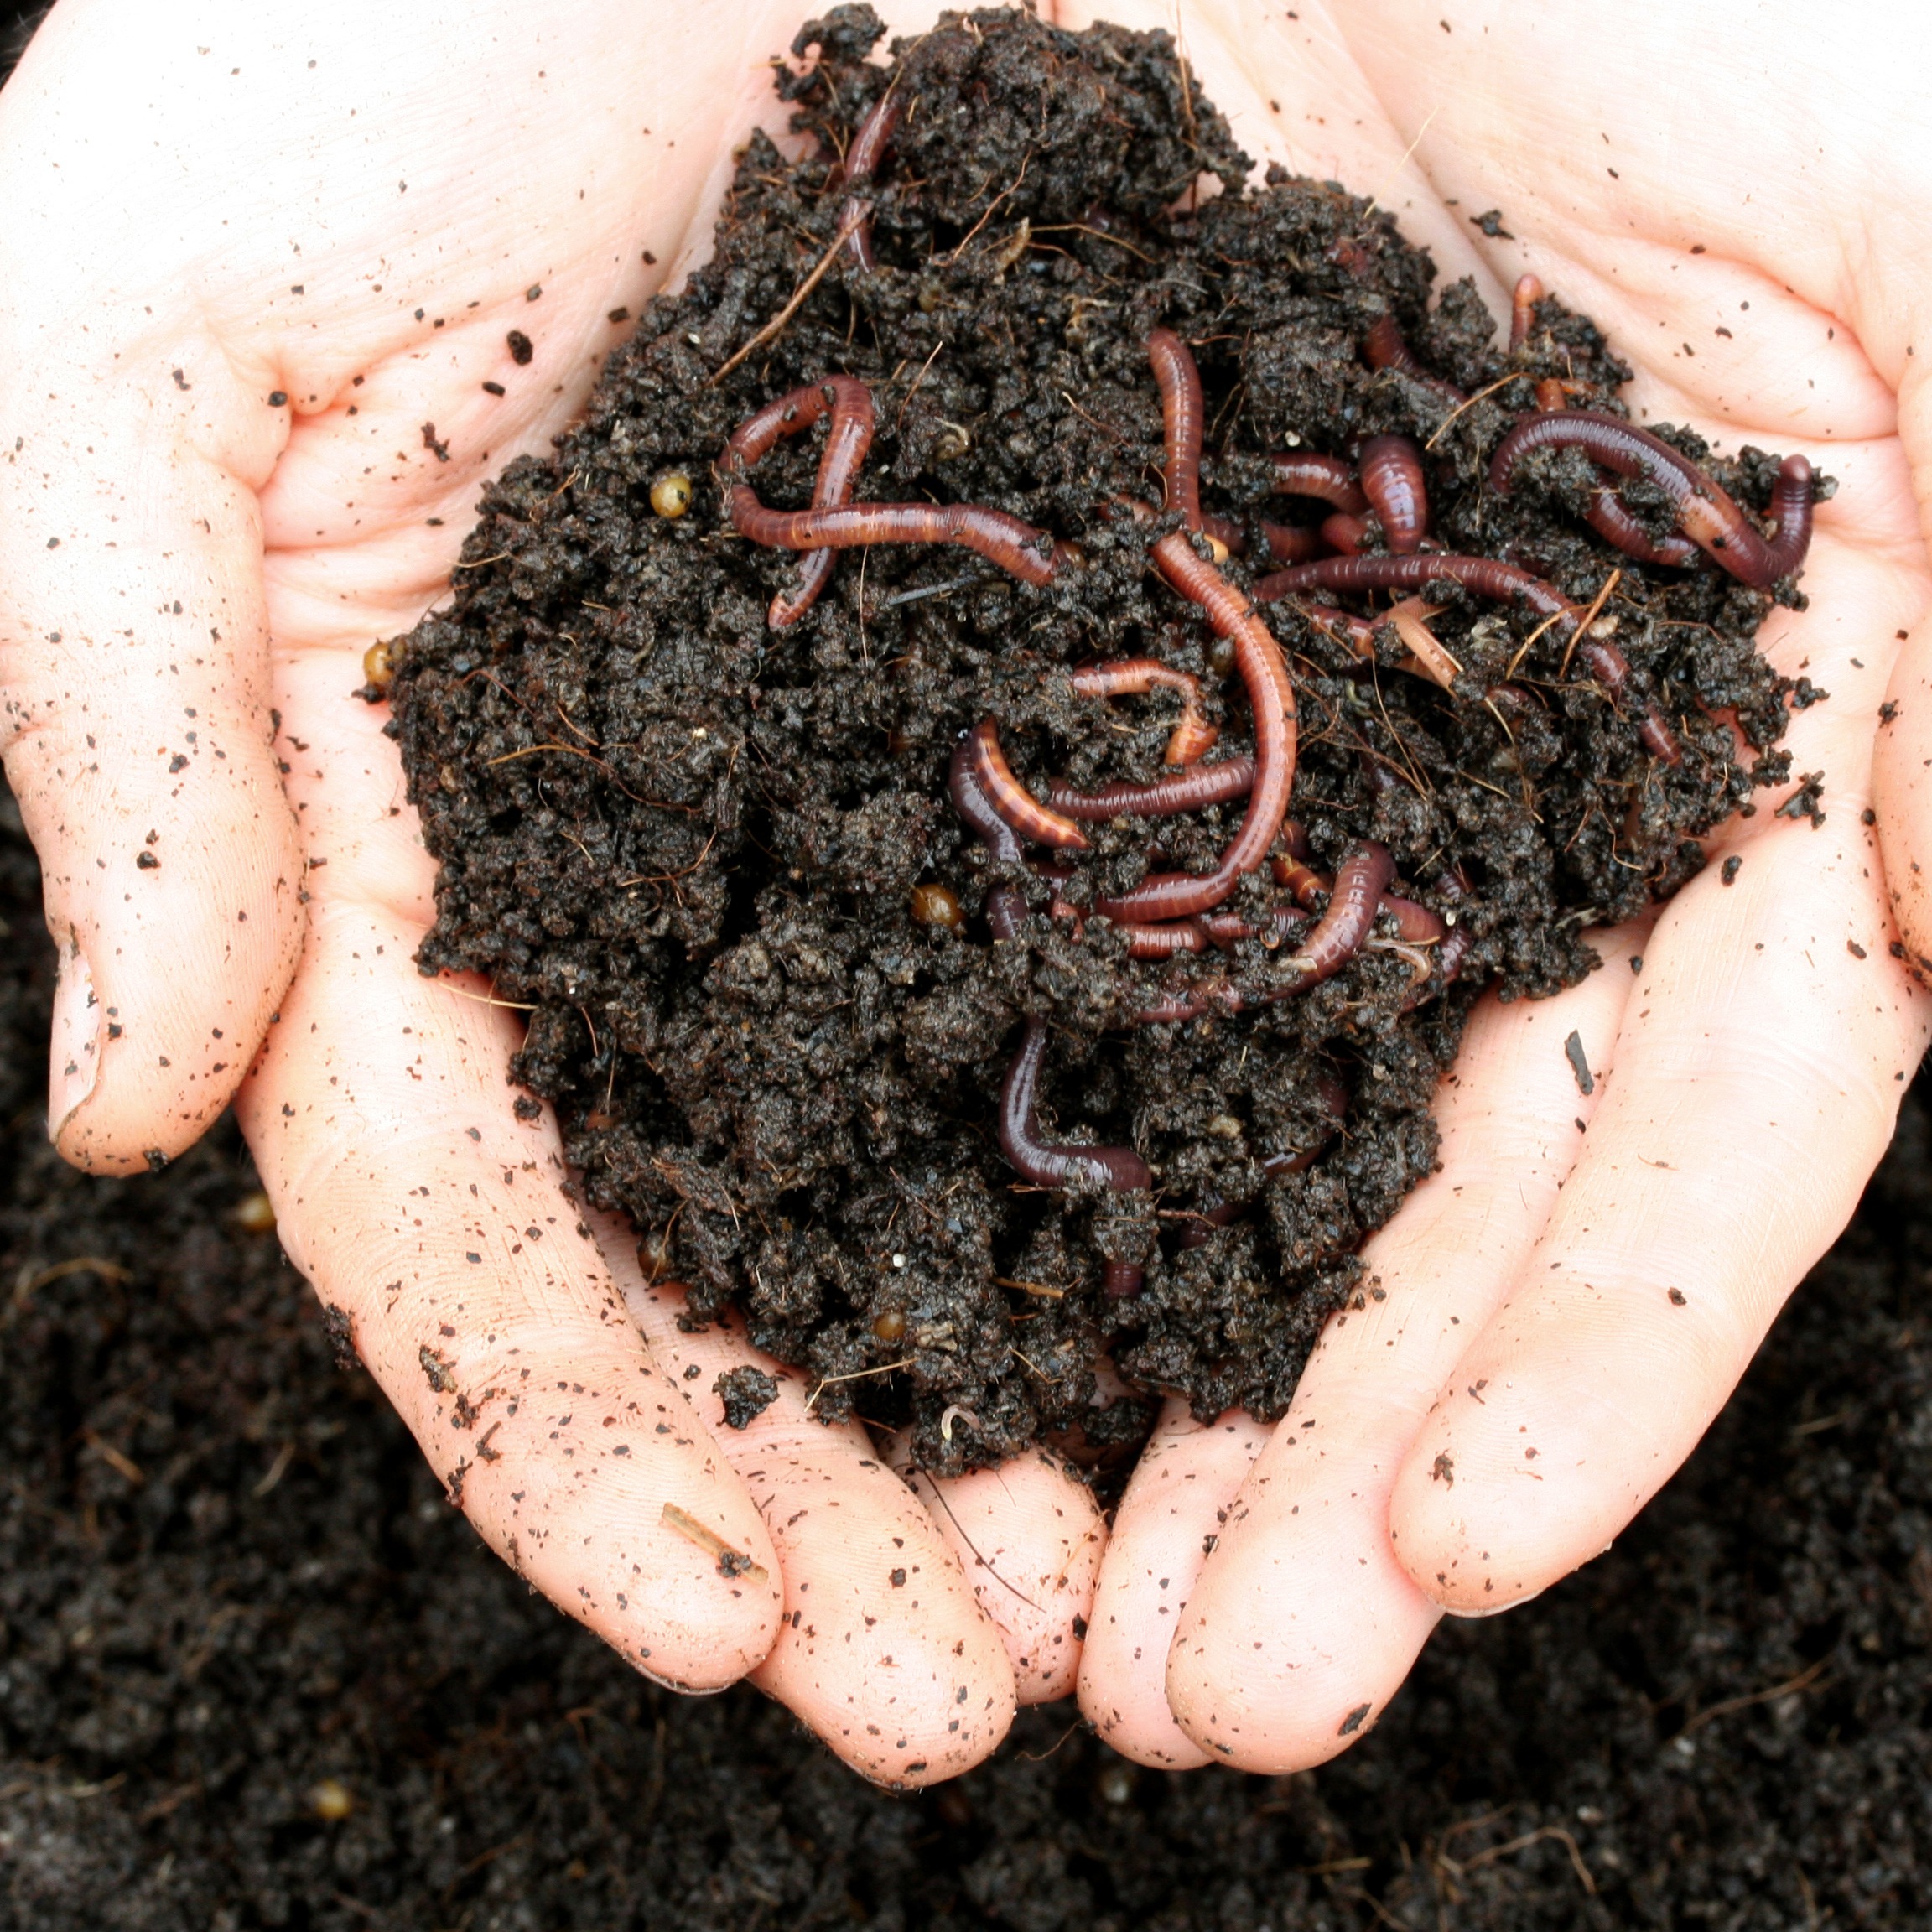 Afbeelding van twee handen die grond met wormen in vasthoudt - Aveve